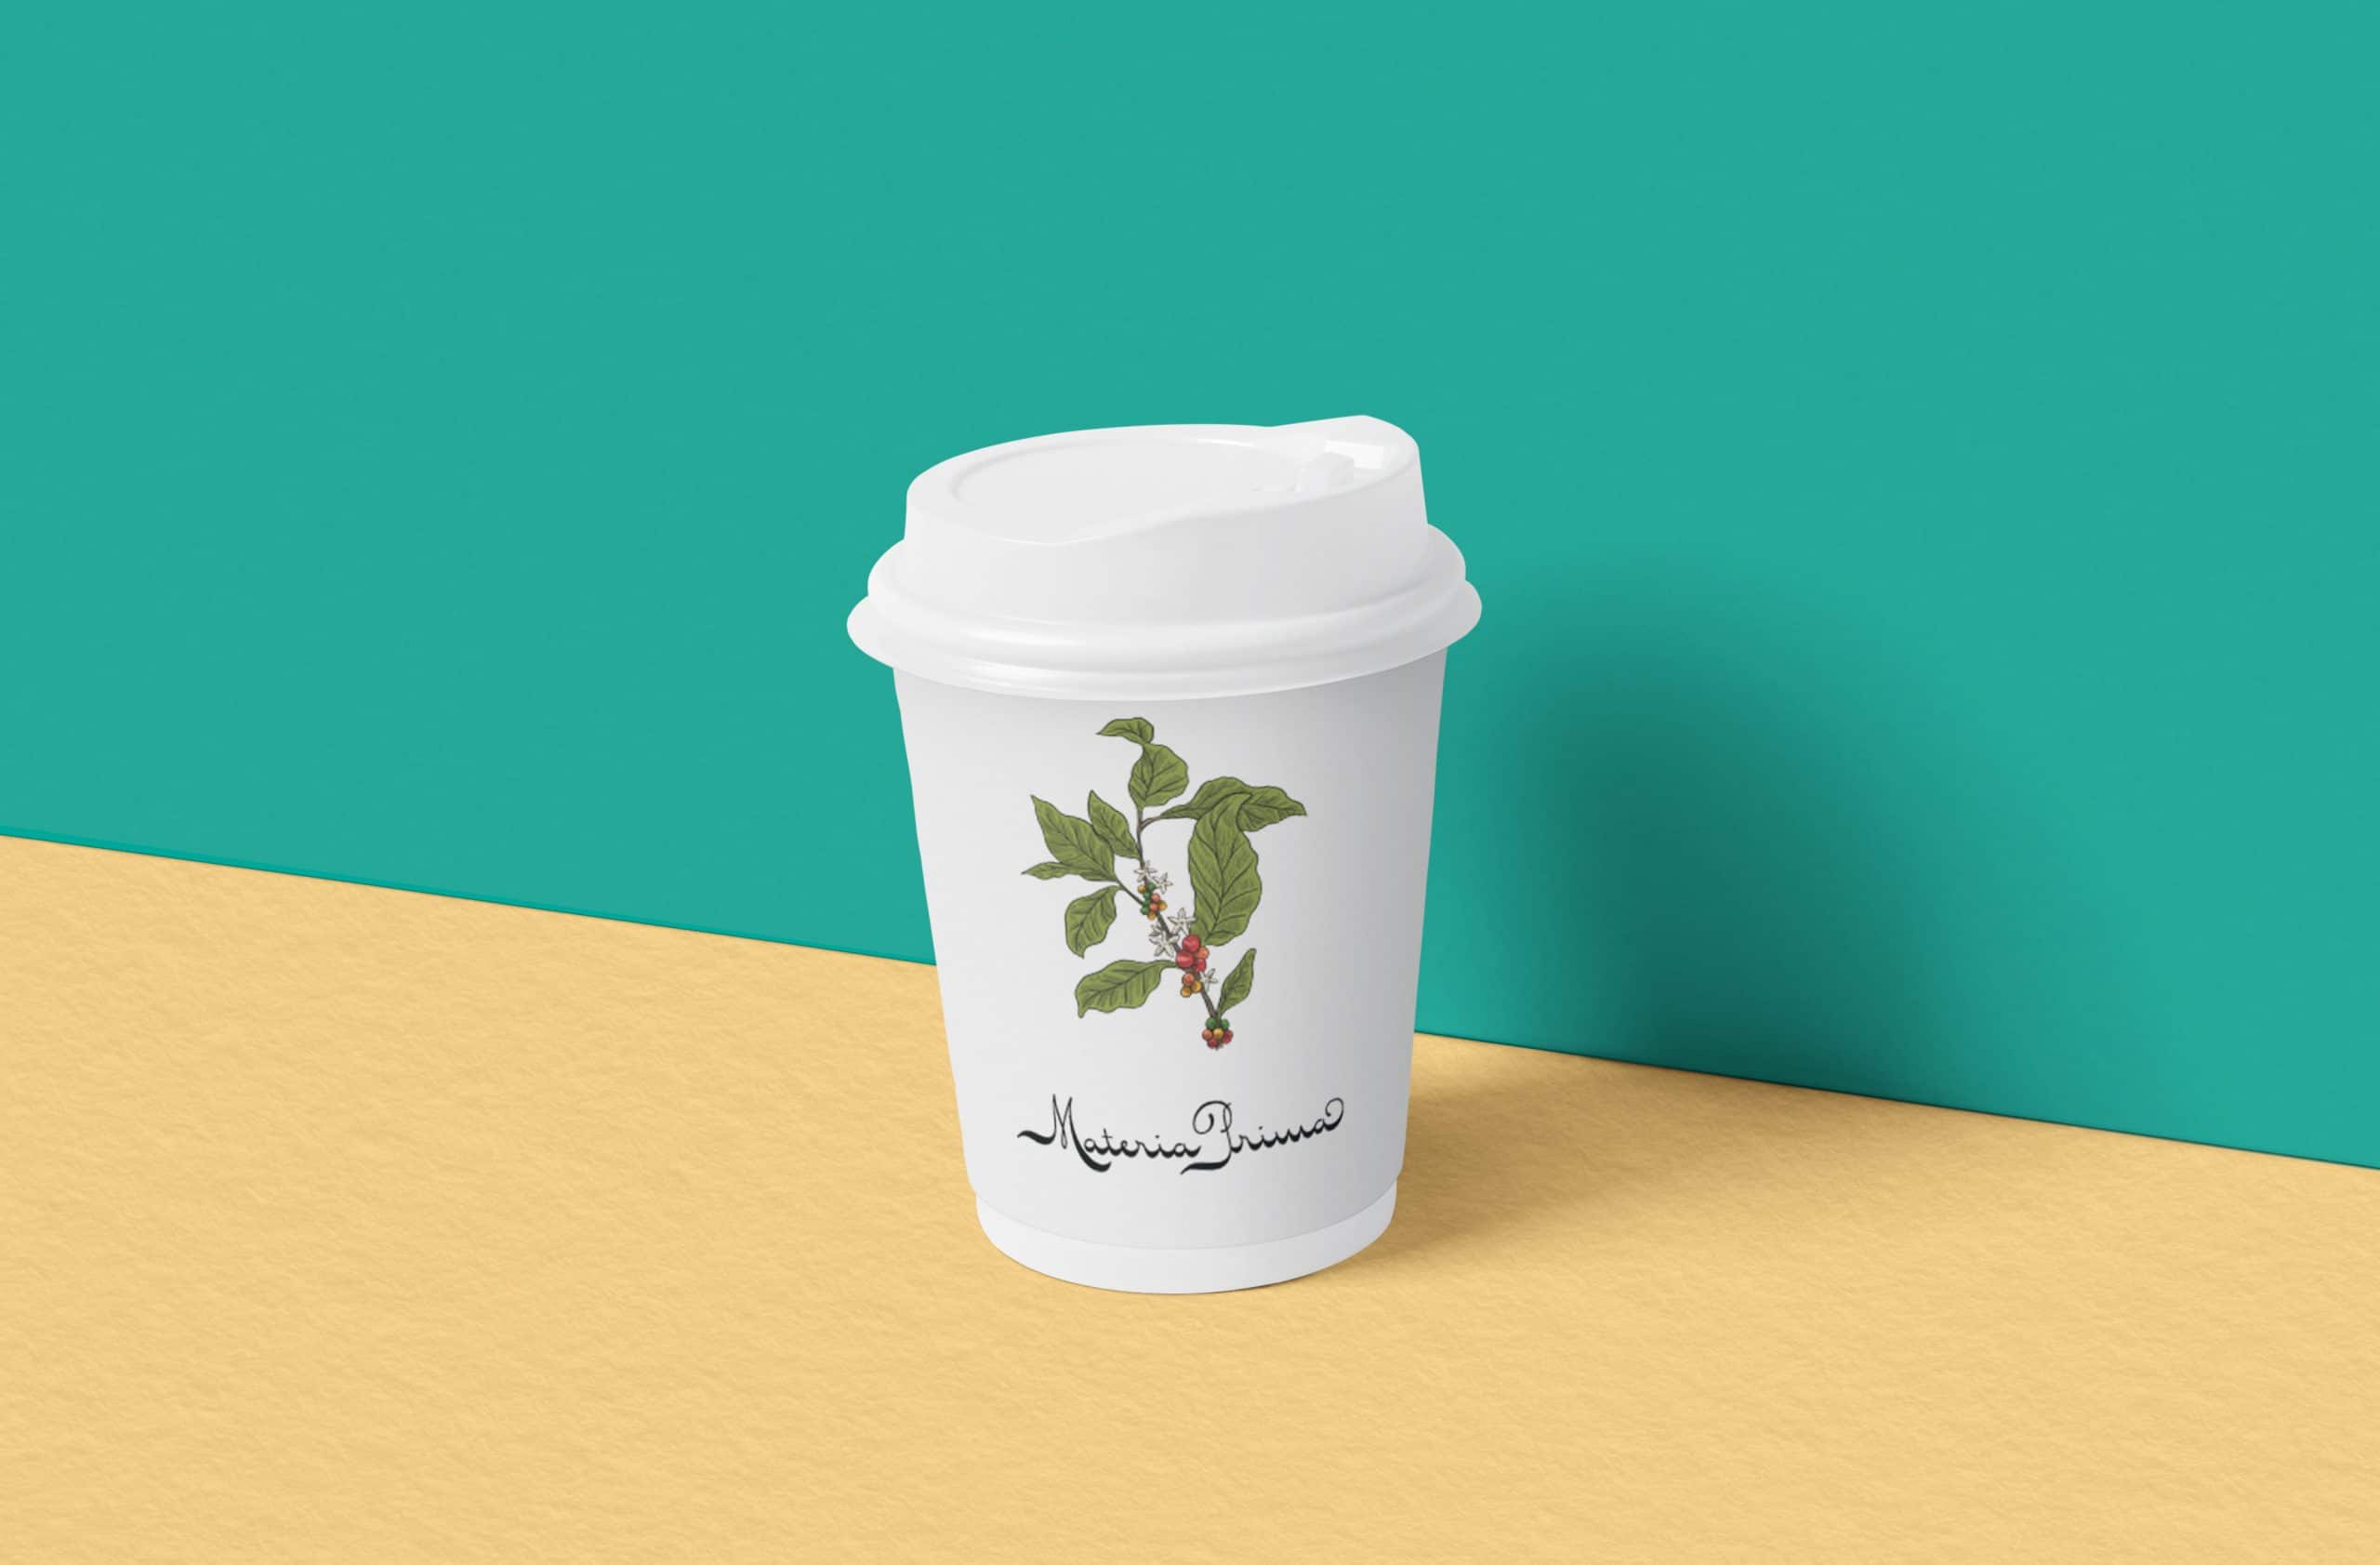 Materia Prima logo on a to-go espresso mug